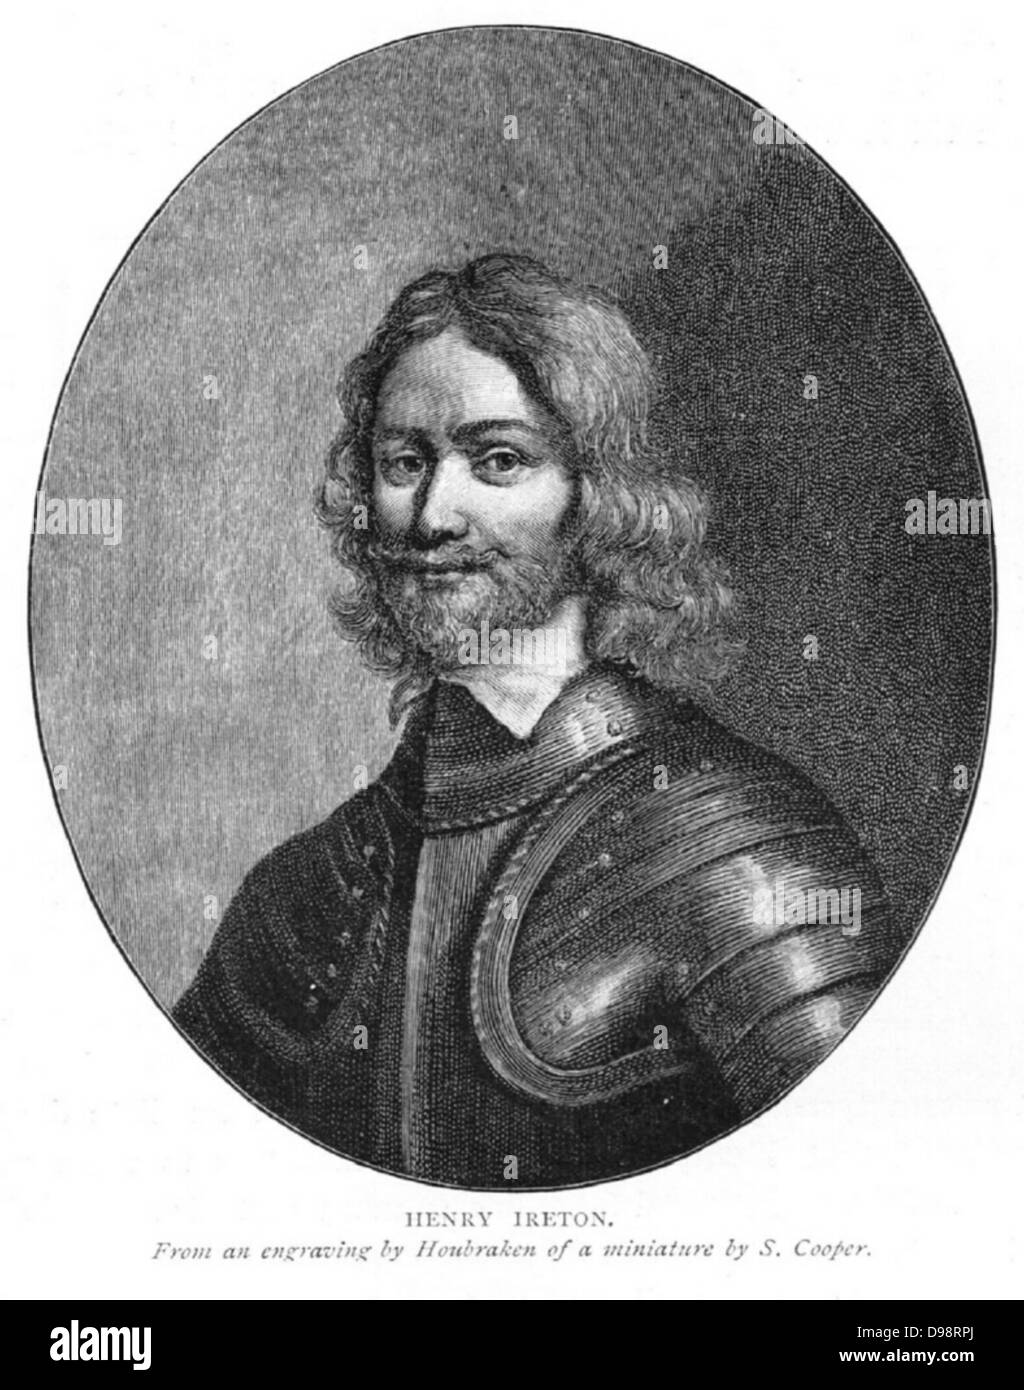 Henry Ireton (1611 - 26 novembre 1651), était un général dans l'armée du Parlement pendant la guerre civile anglaise. Il était le beau-fils d'Oliver Cromwell. Banque D'Images